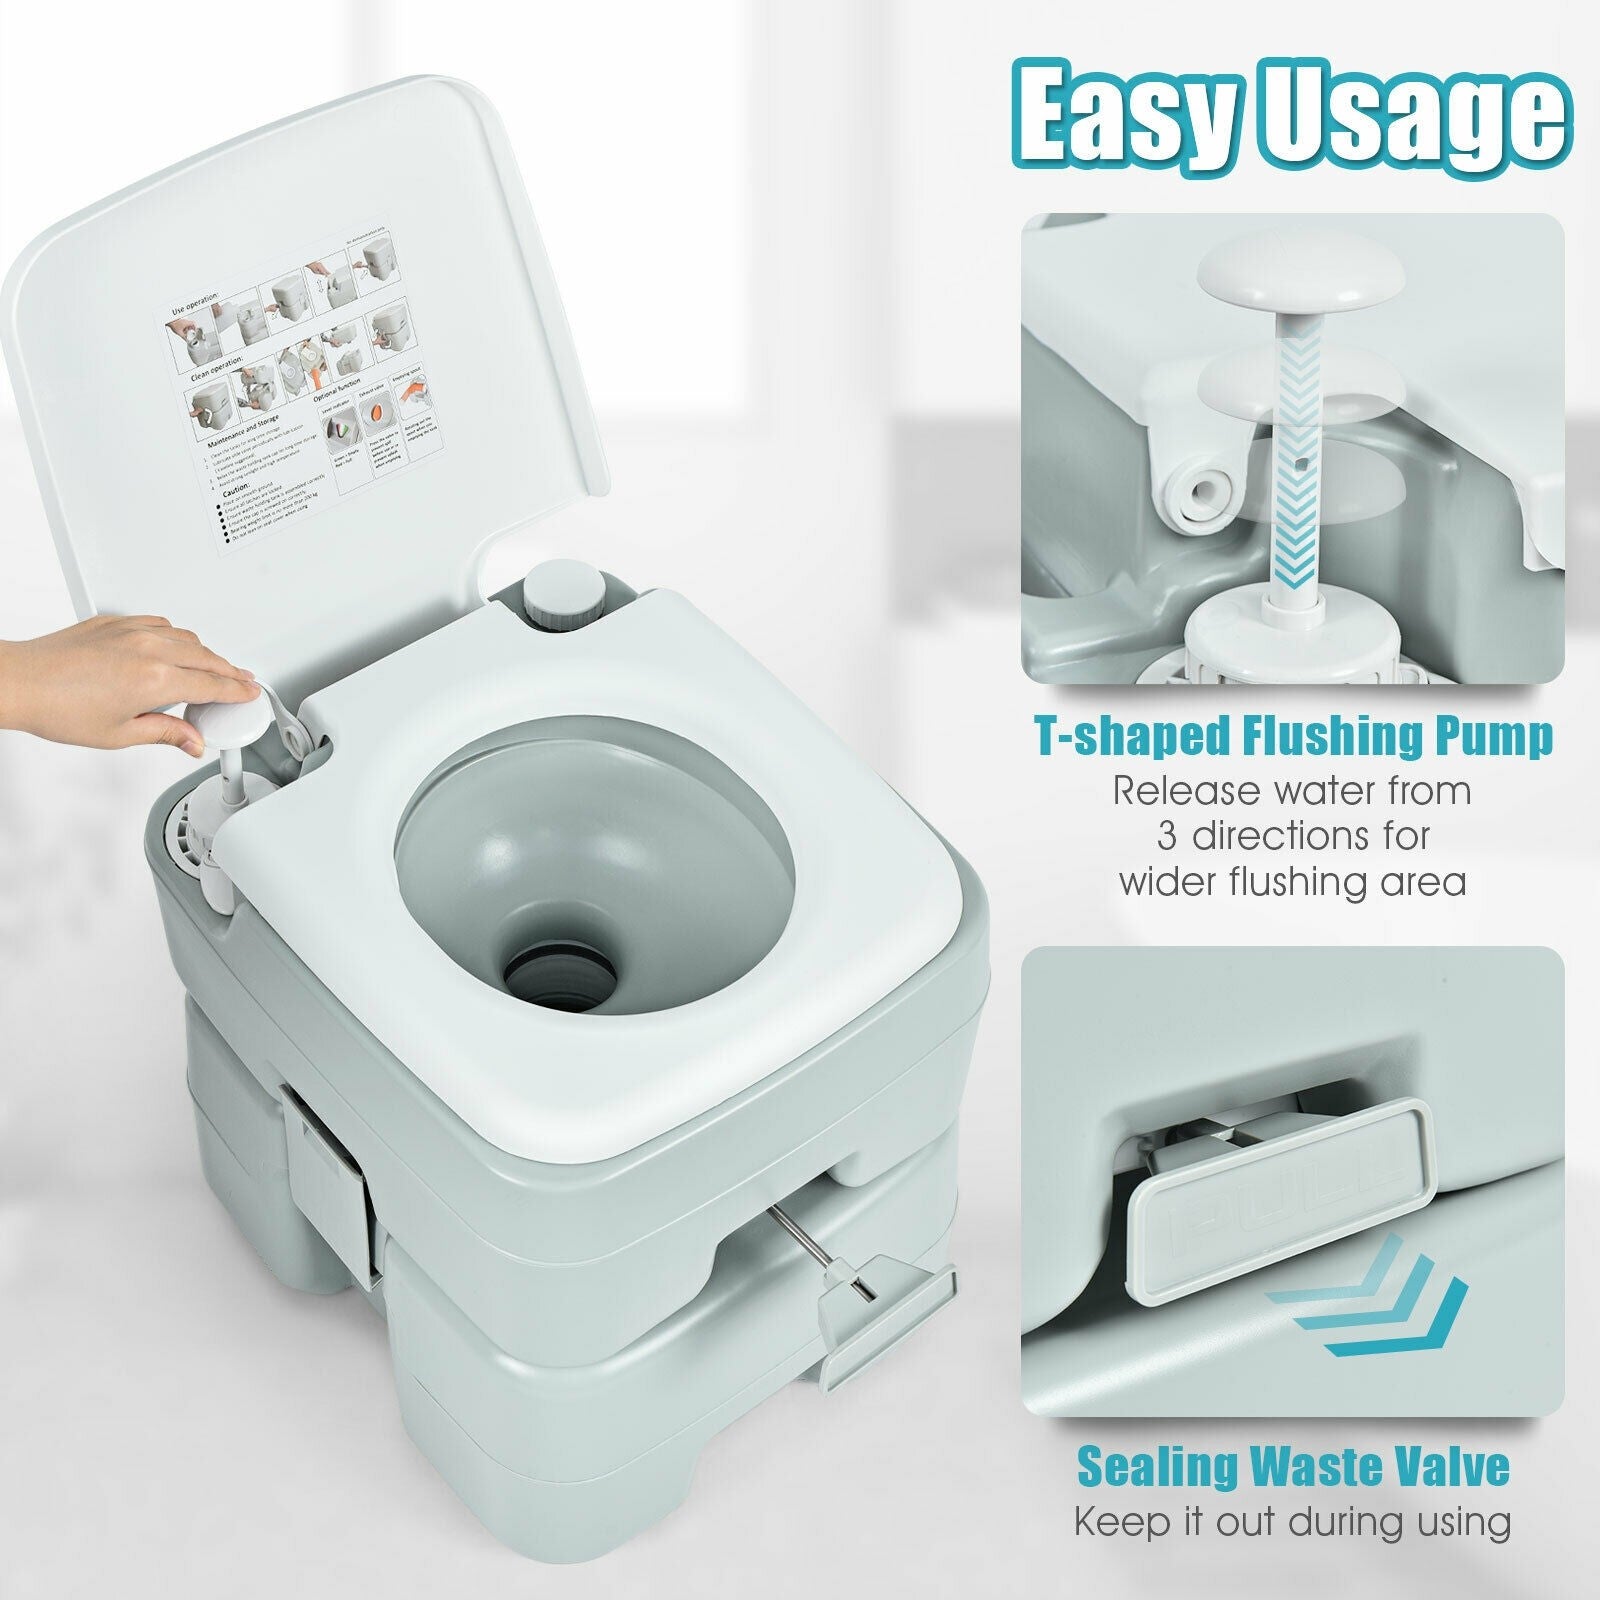 Giantex Portable Toilet 5.3 Gallon